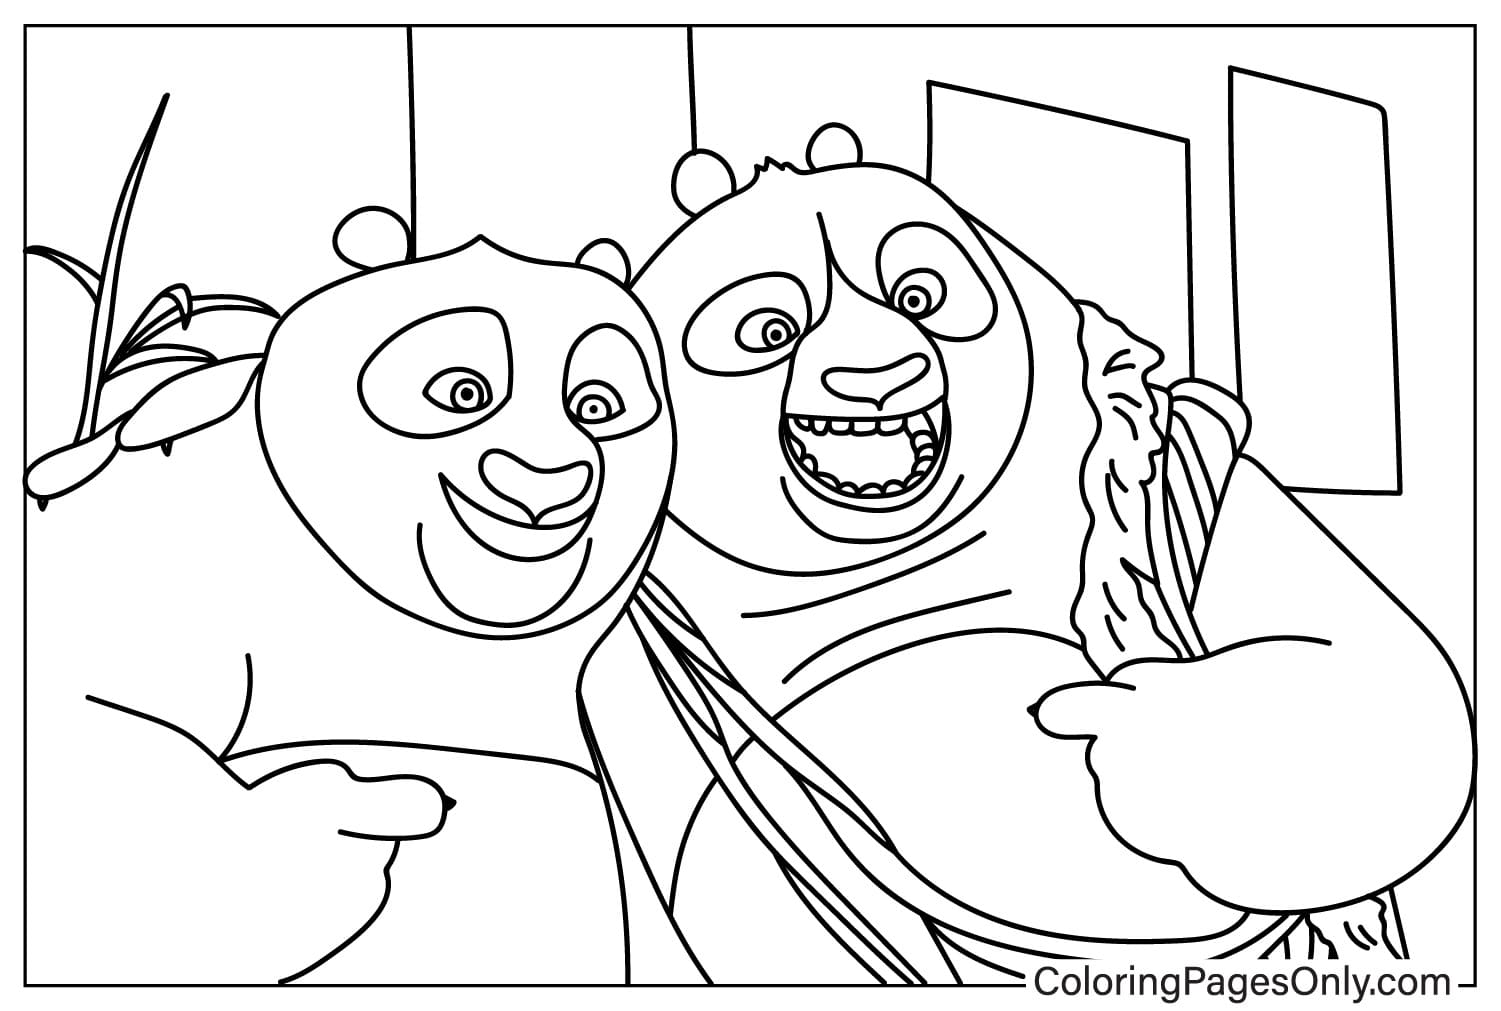 Página para colorir de Po e papai do Kung Fu Panda